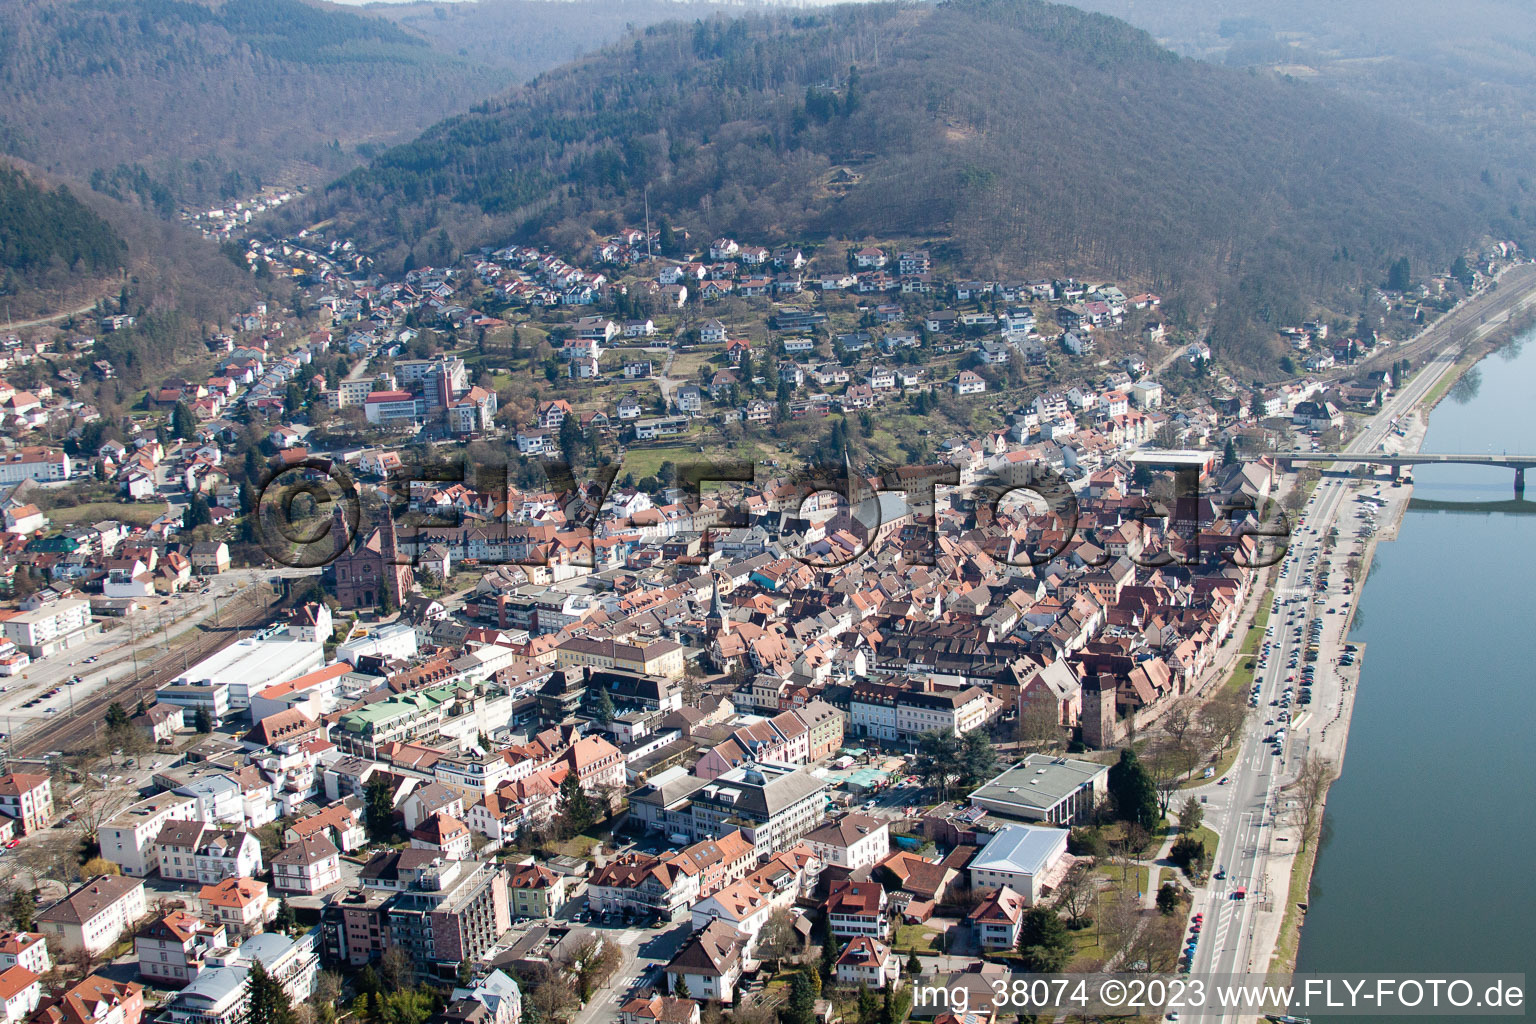 Eberbach im Bundesland Baden-Württemberg, Deutschland von der Drohne aus gesehen